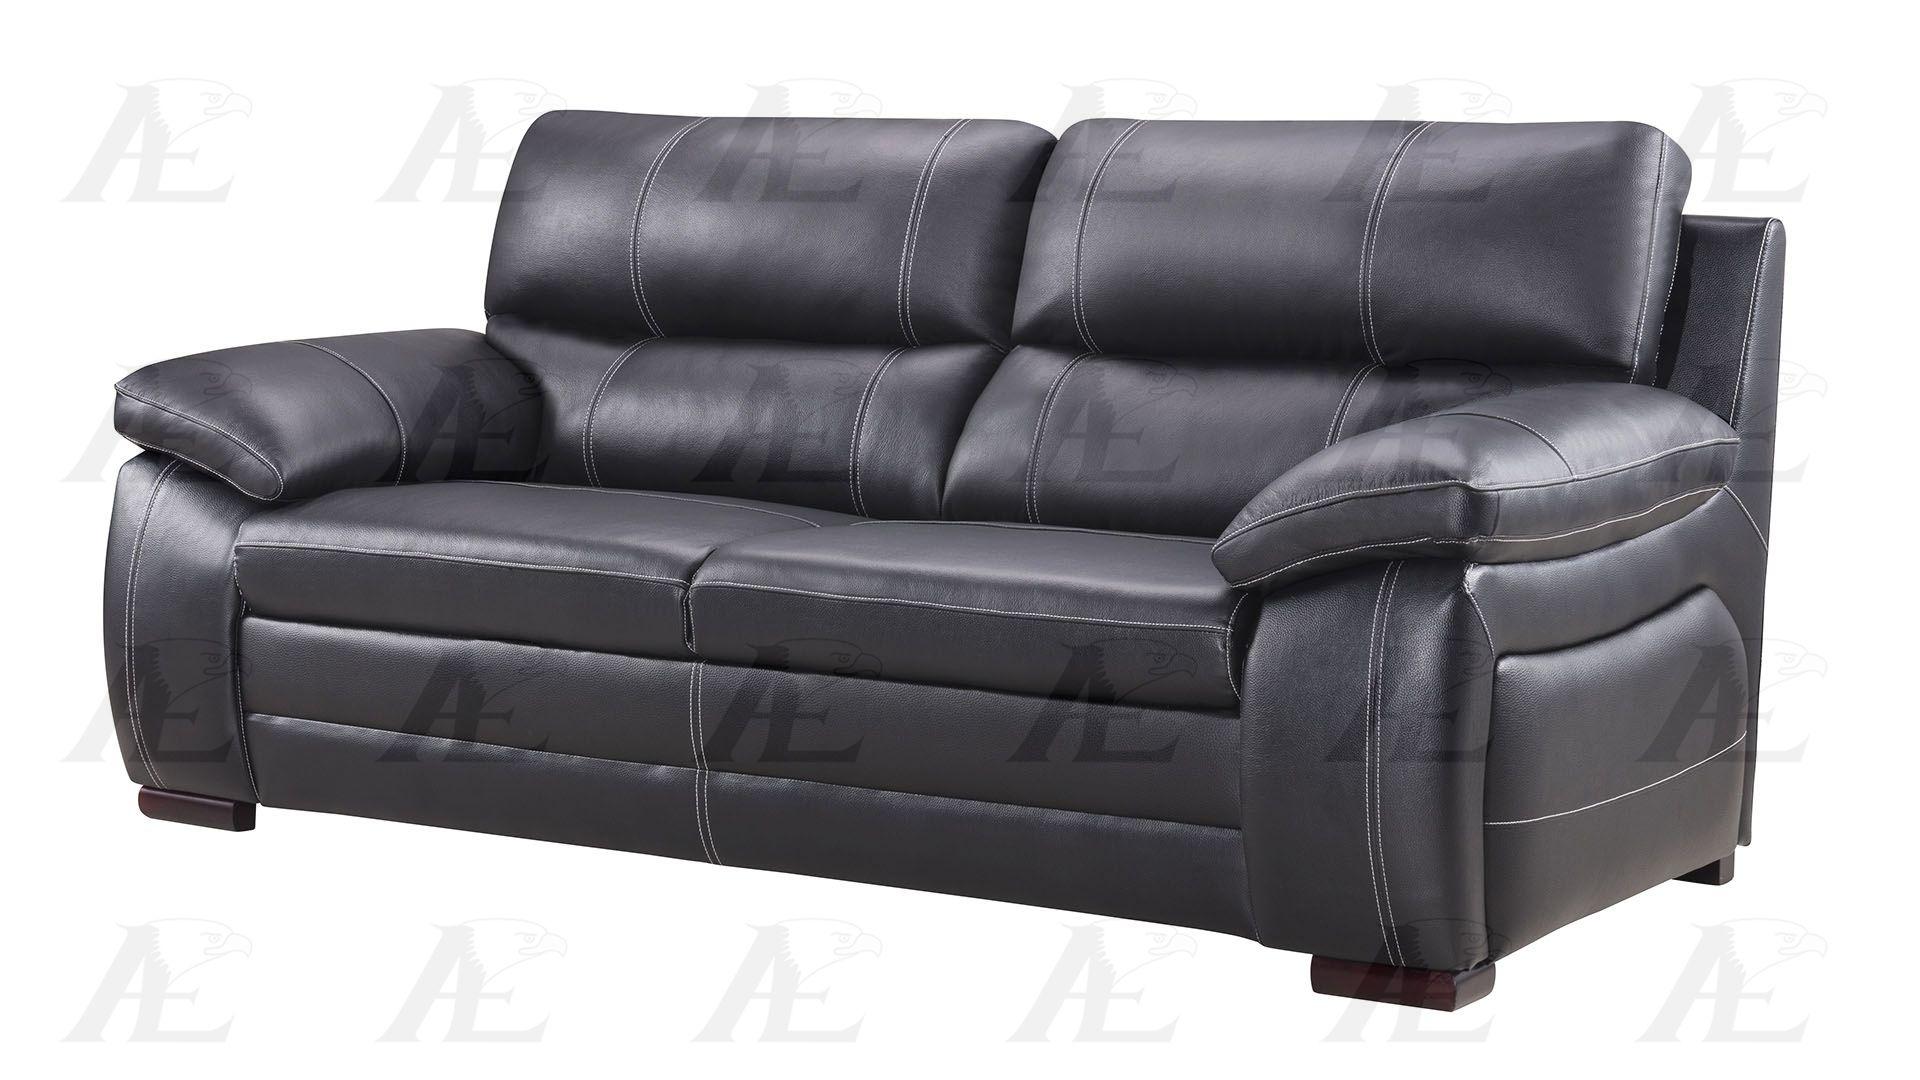 

    
American Eagle Furniture EK-B520-BK Sofa and Loveseat Set Black EK-B520-BK Set-2
